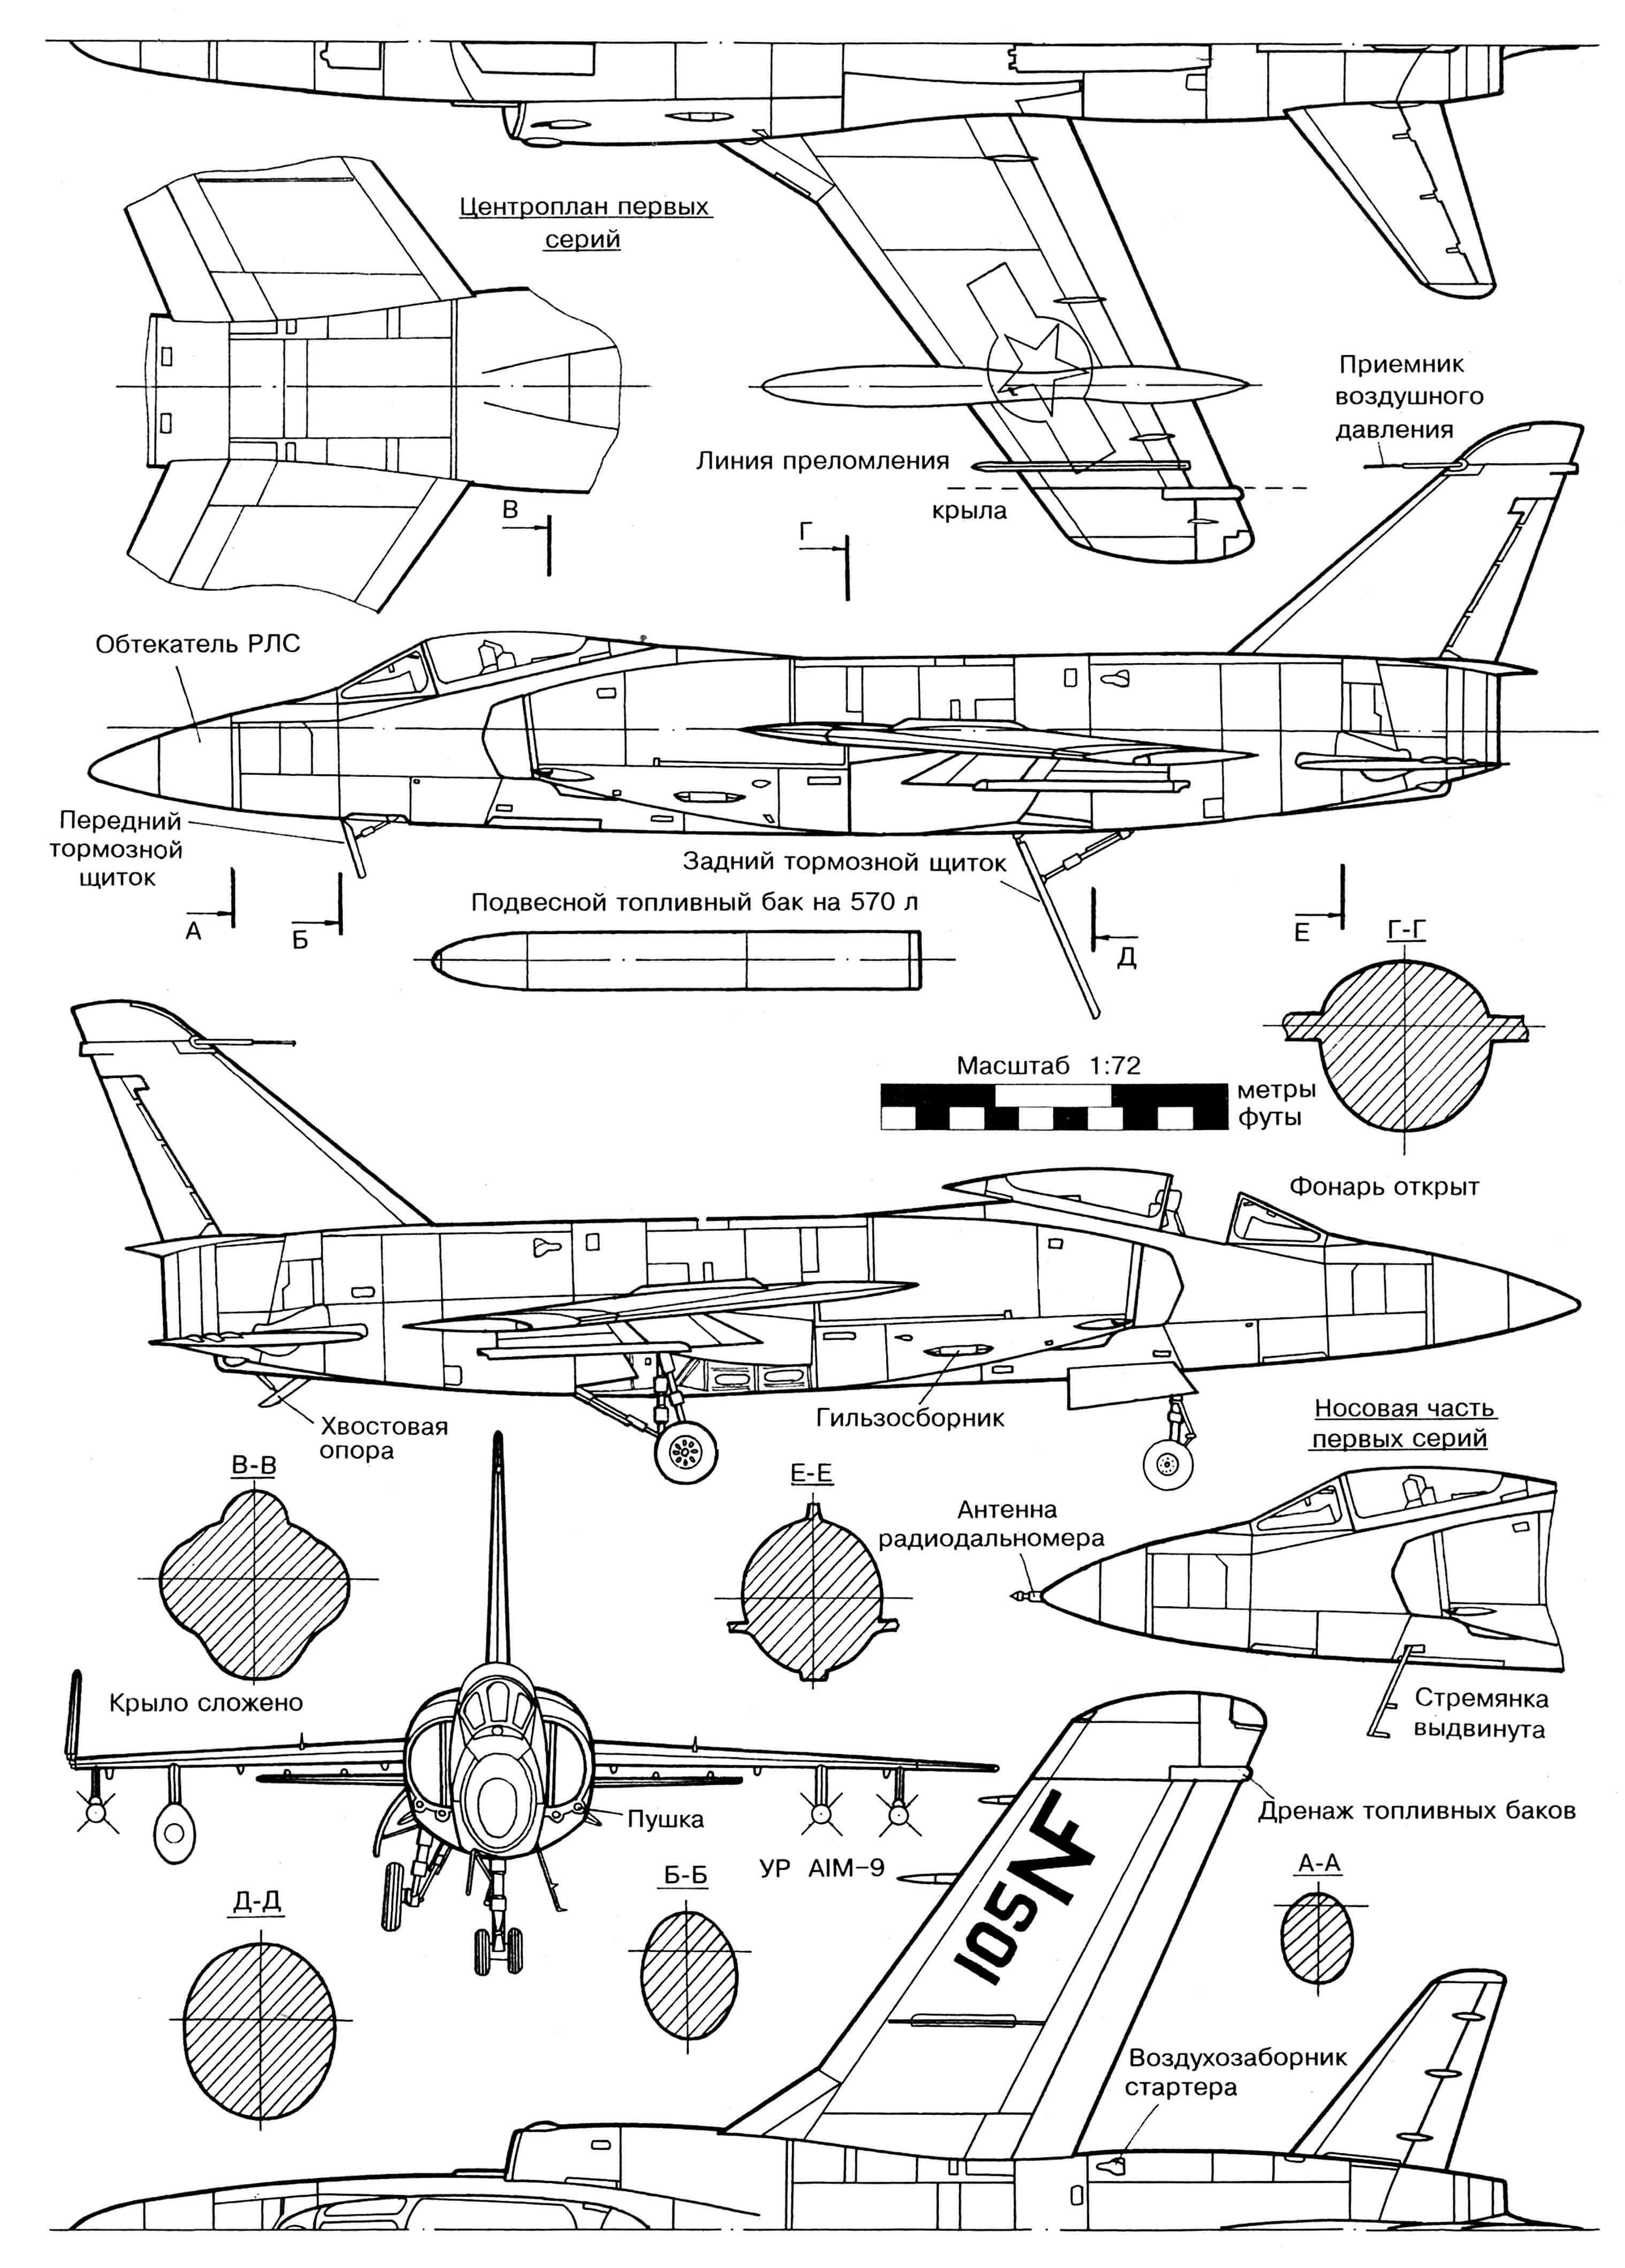 Grumman F-11a Tiger